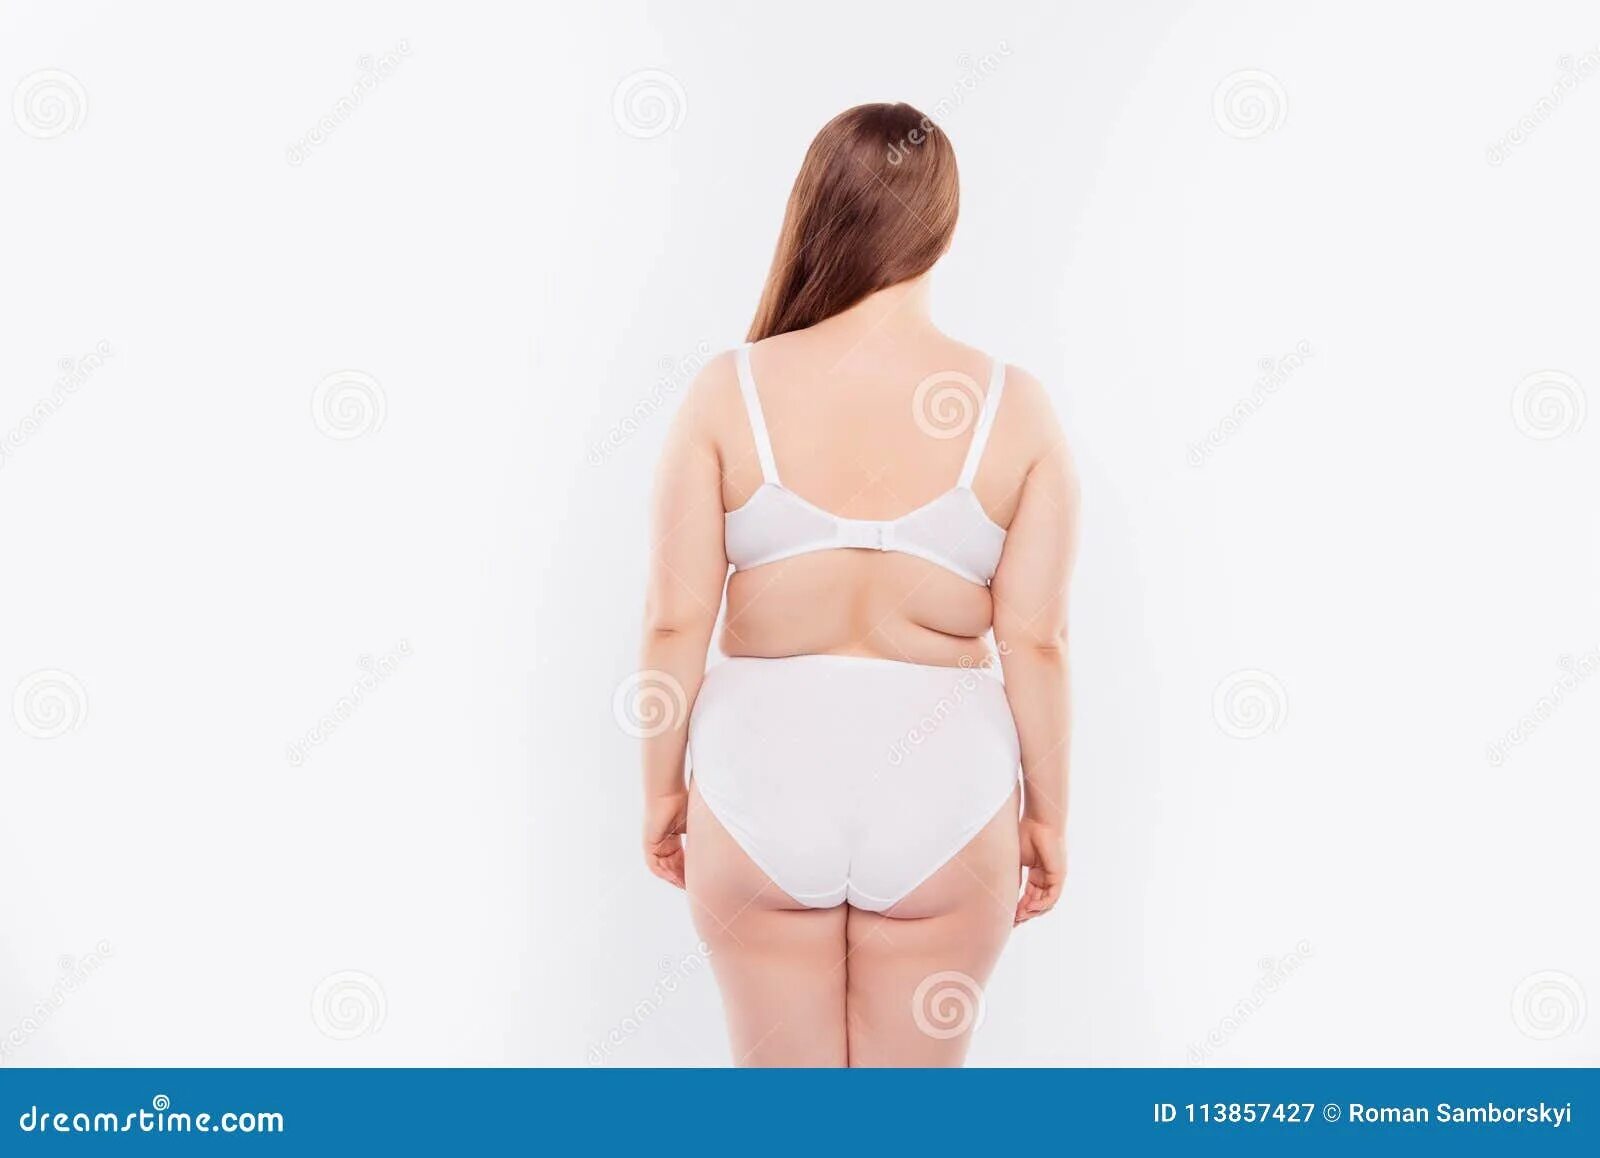 Кастинг женщин с целлюлитом. Целлюлитные женщины вид спереди. Средней полноты девушка с жировыми складками.